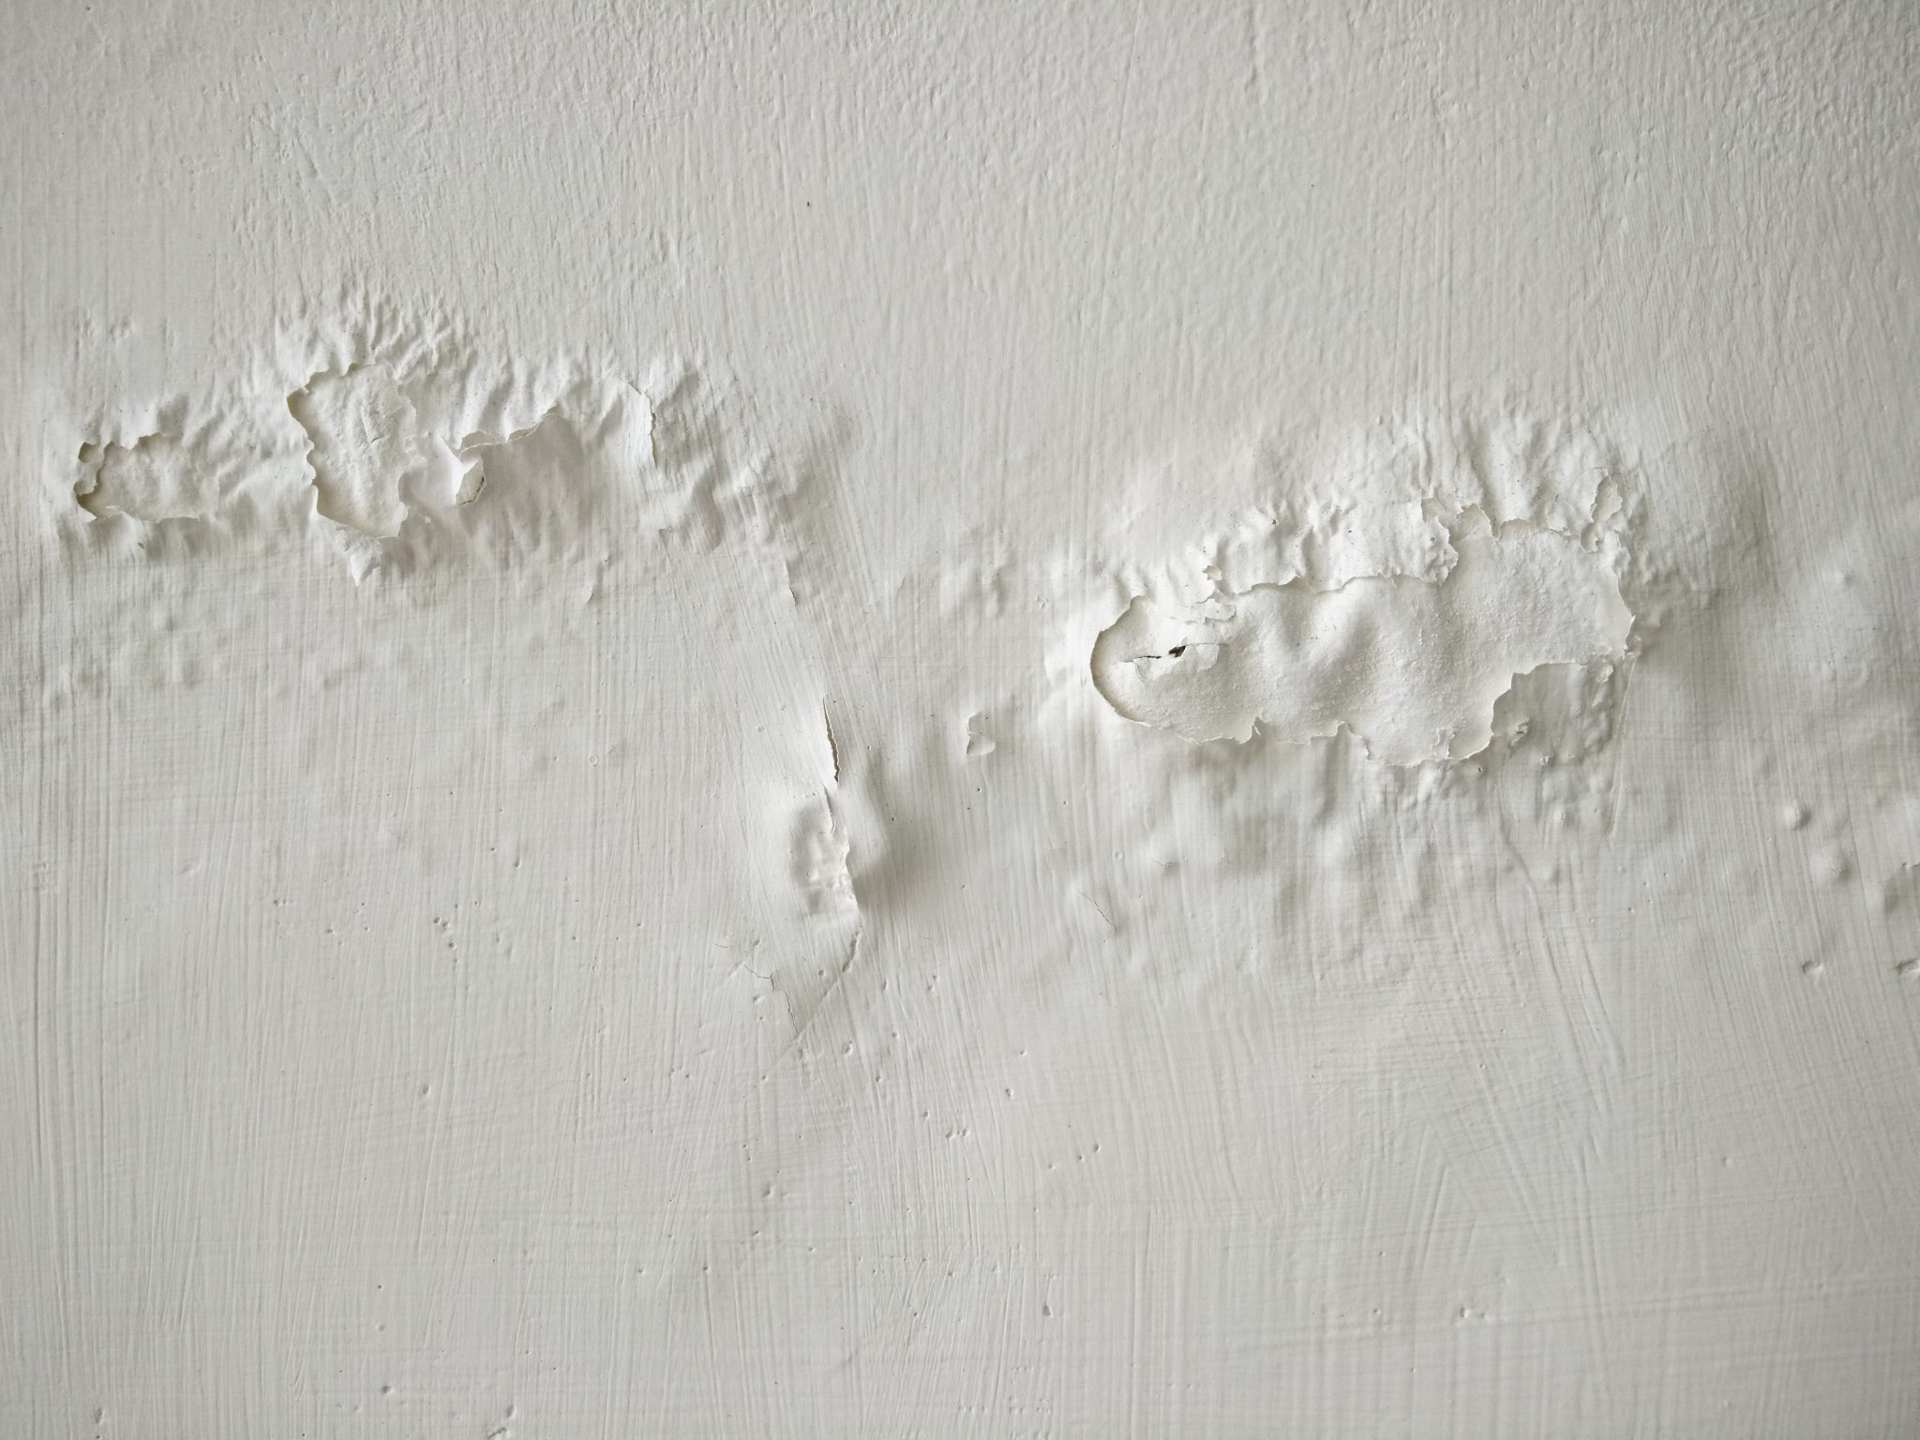 Una pared blanca deteriorada debido a humedad por filtracion